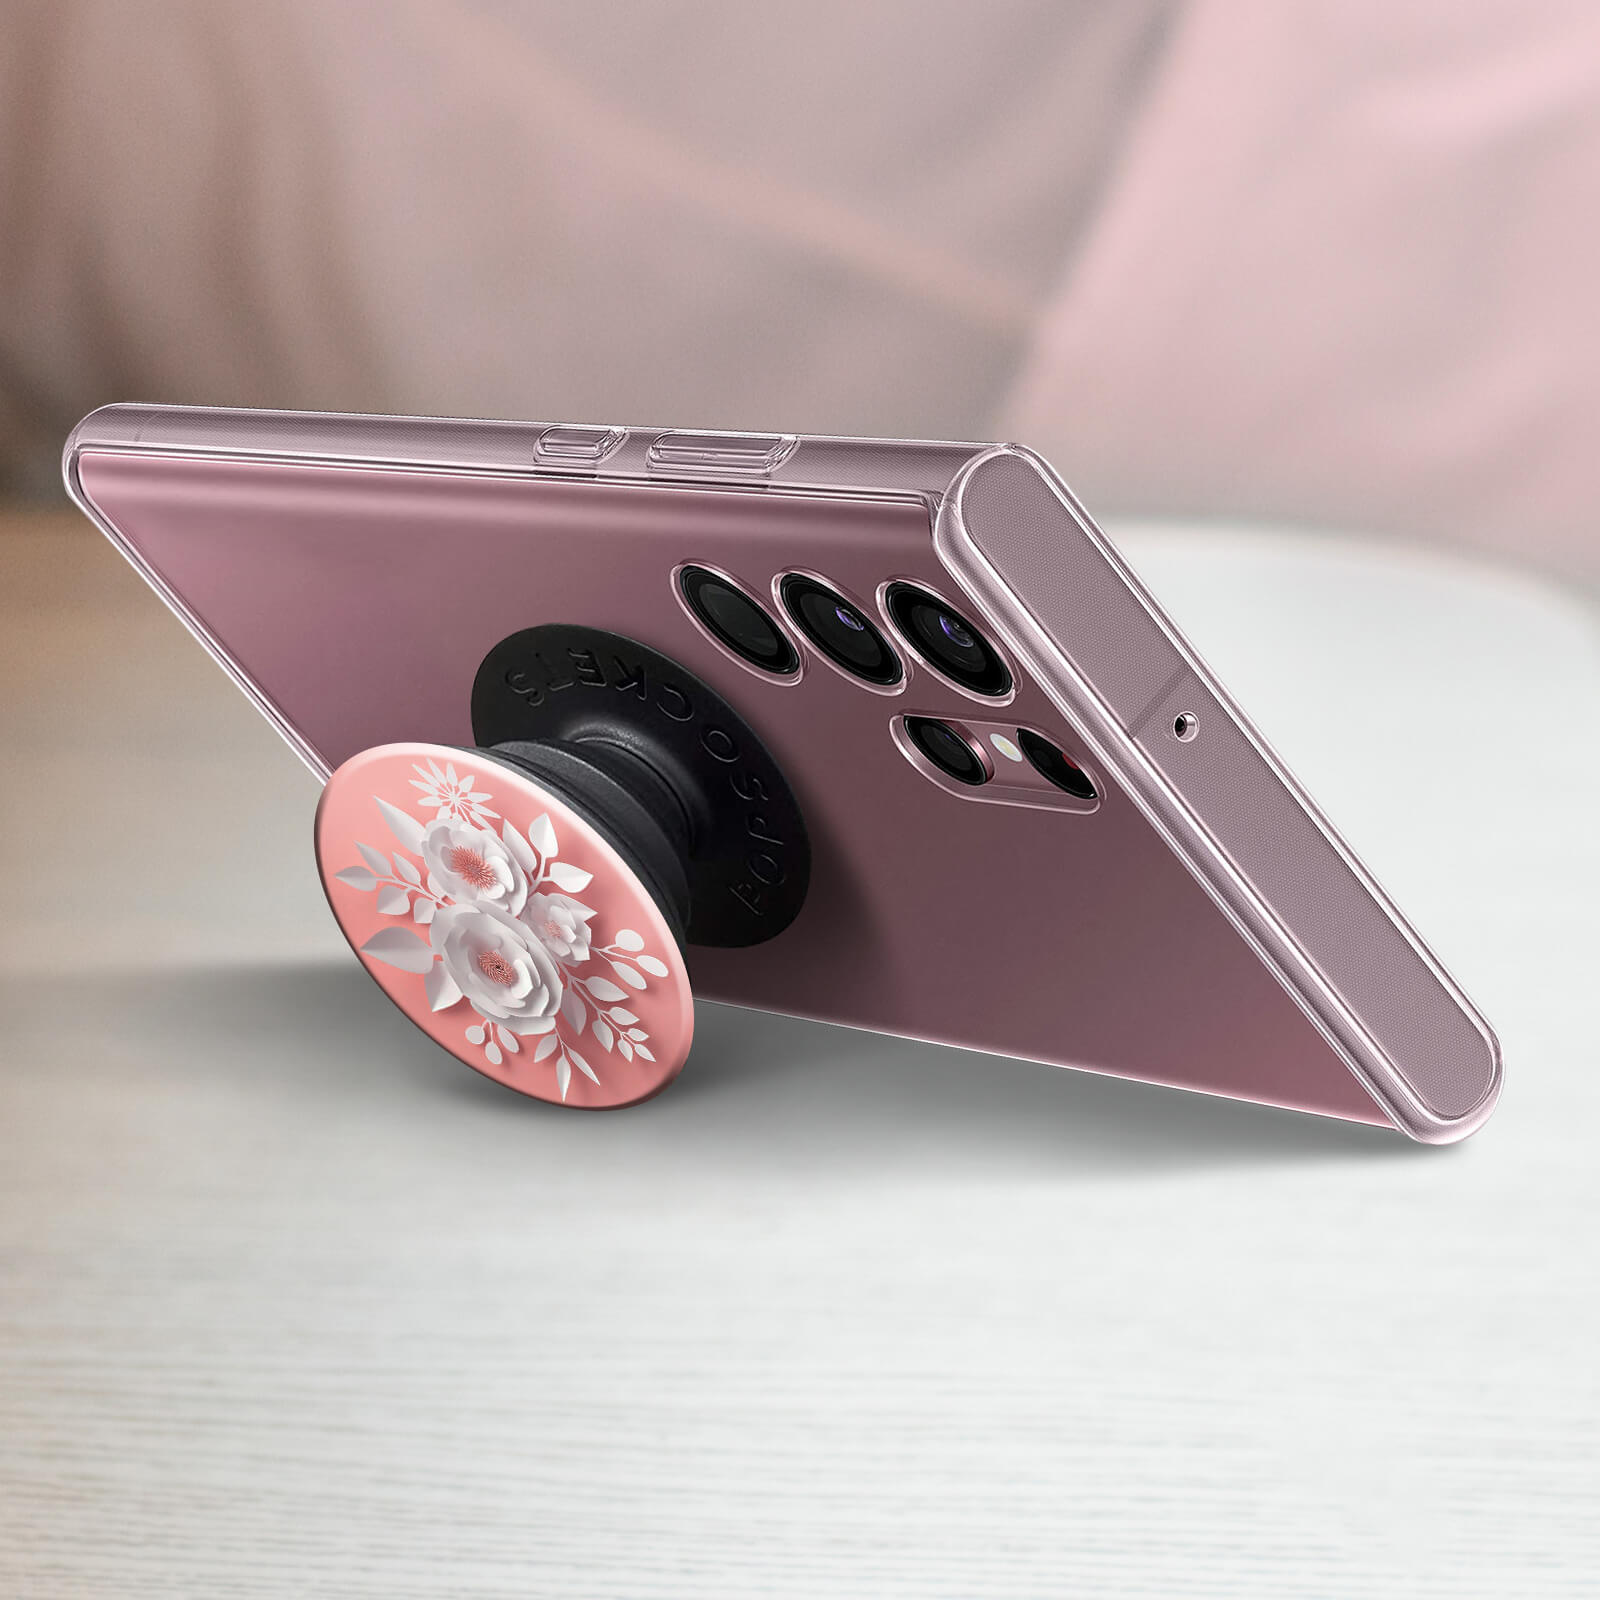 POPSOCKETS Handy-Griff Design Bunt Flower PopGrip mit